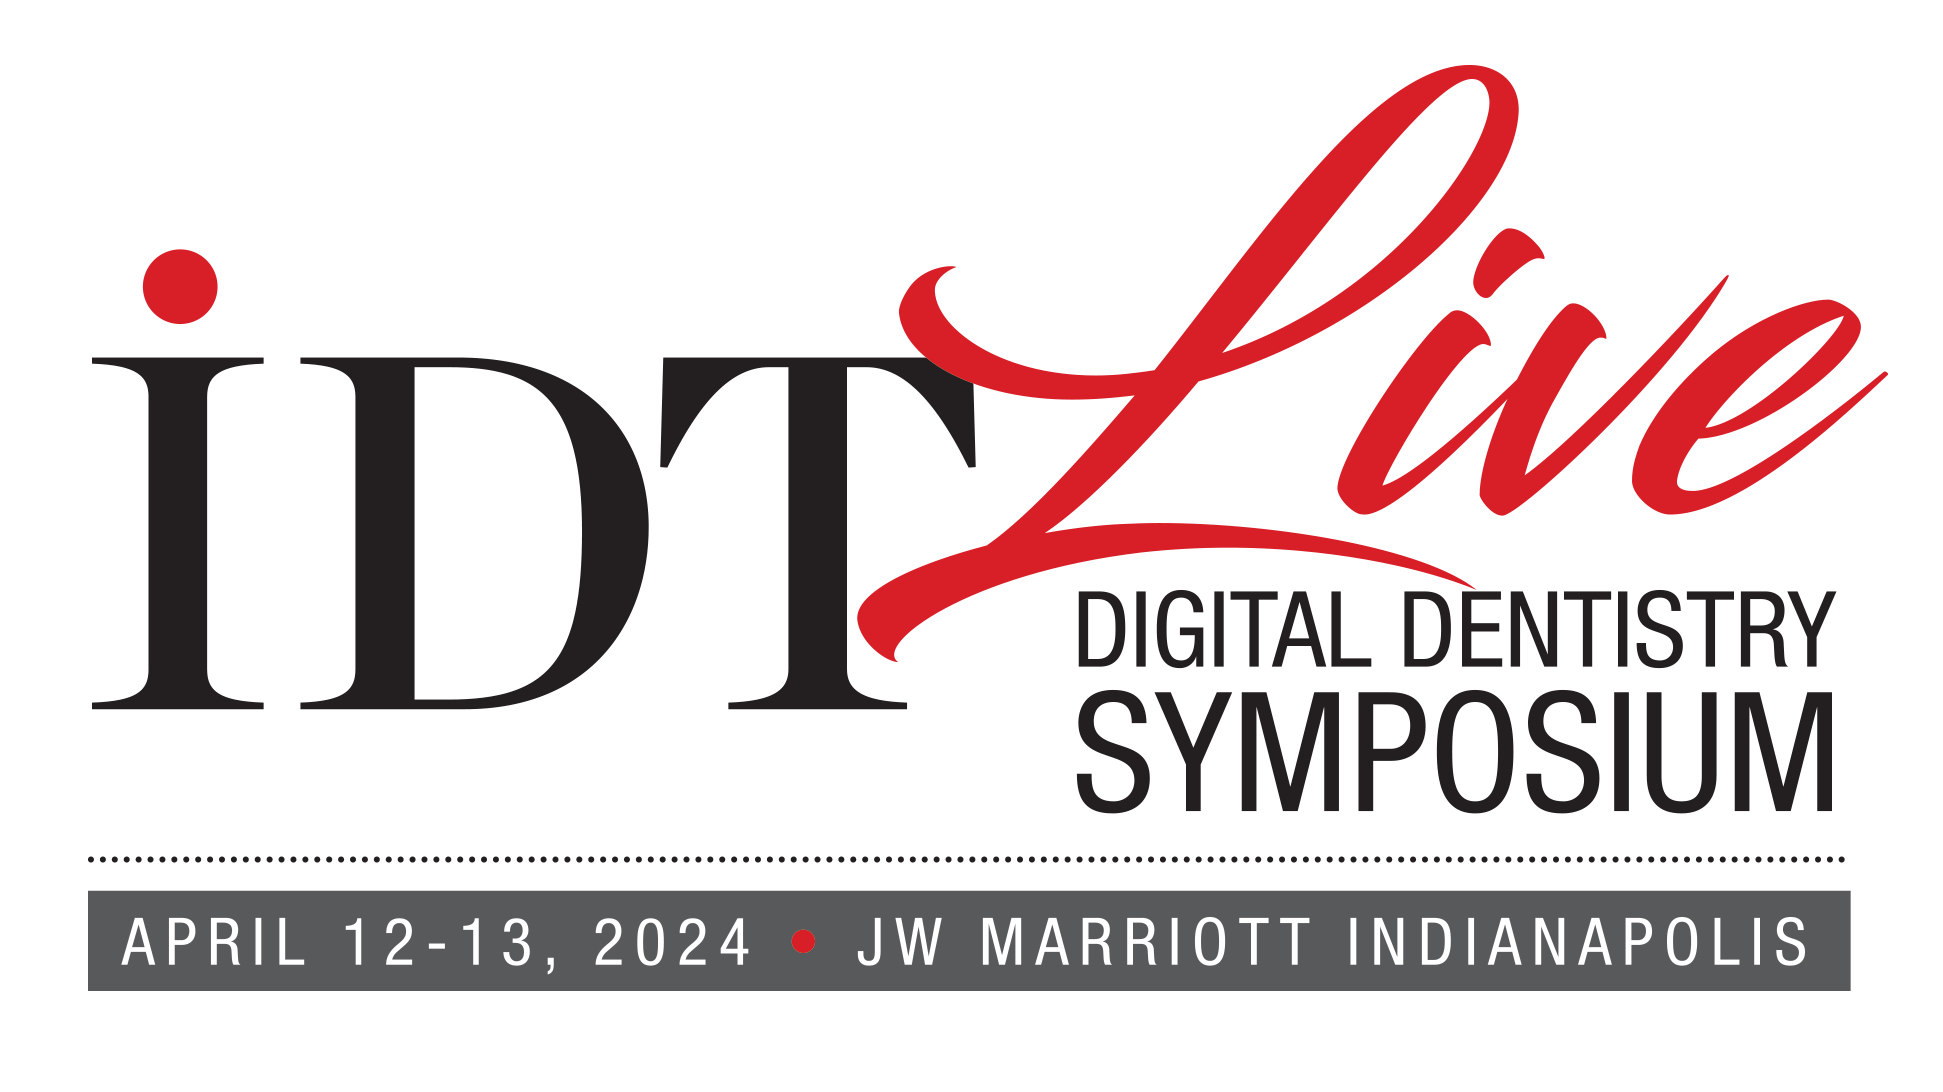 Inside Dental Technology Live Digital Dentistry Symposium 2024 Banner